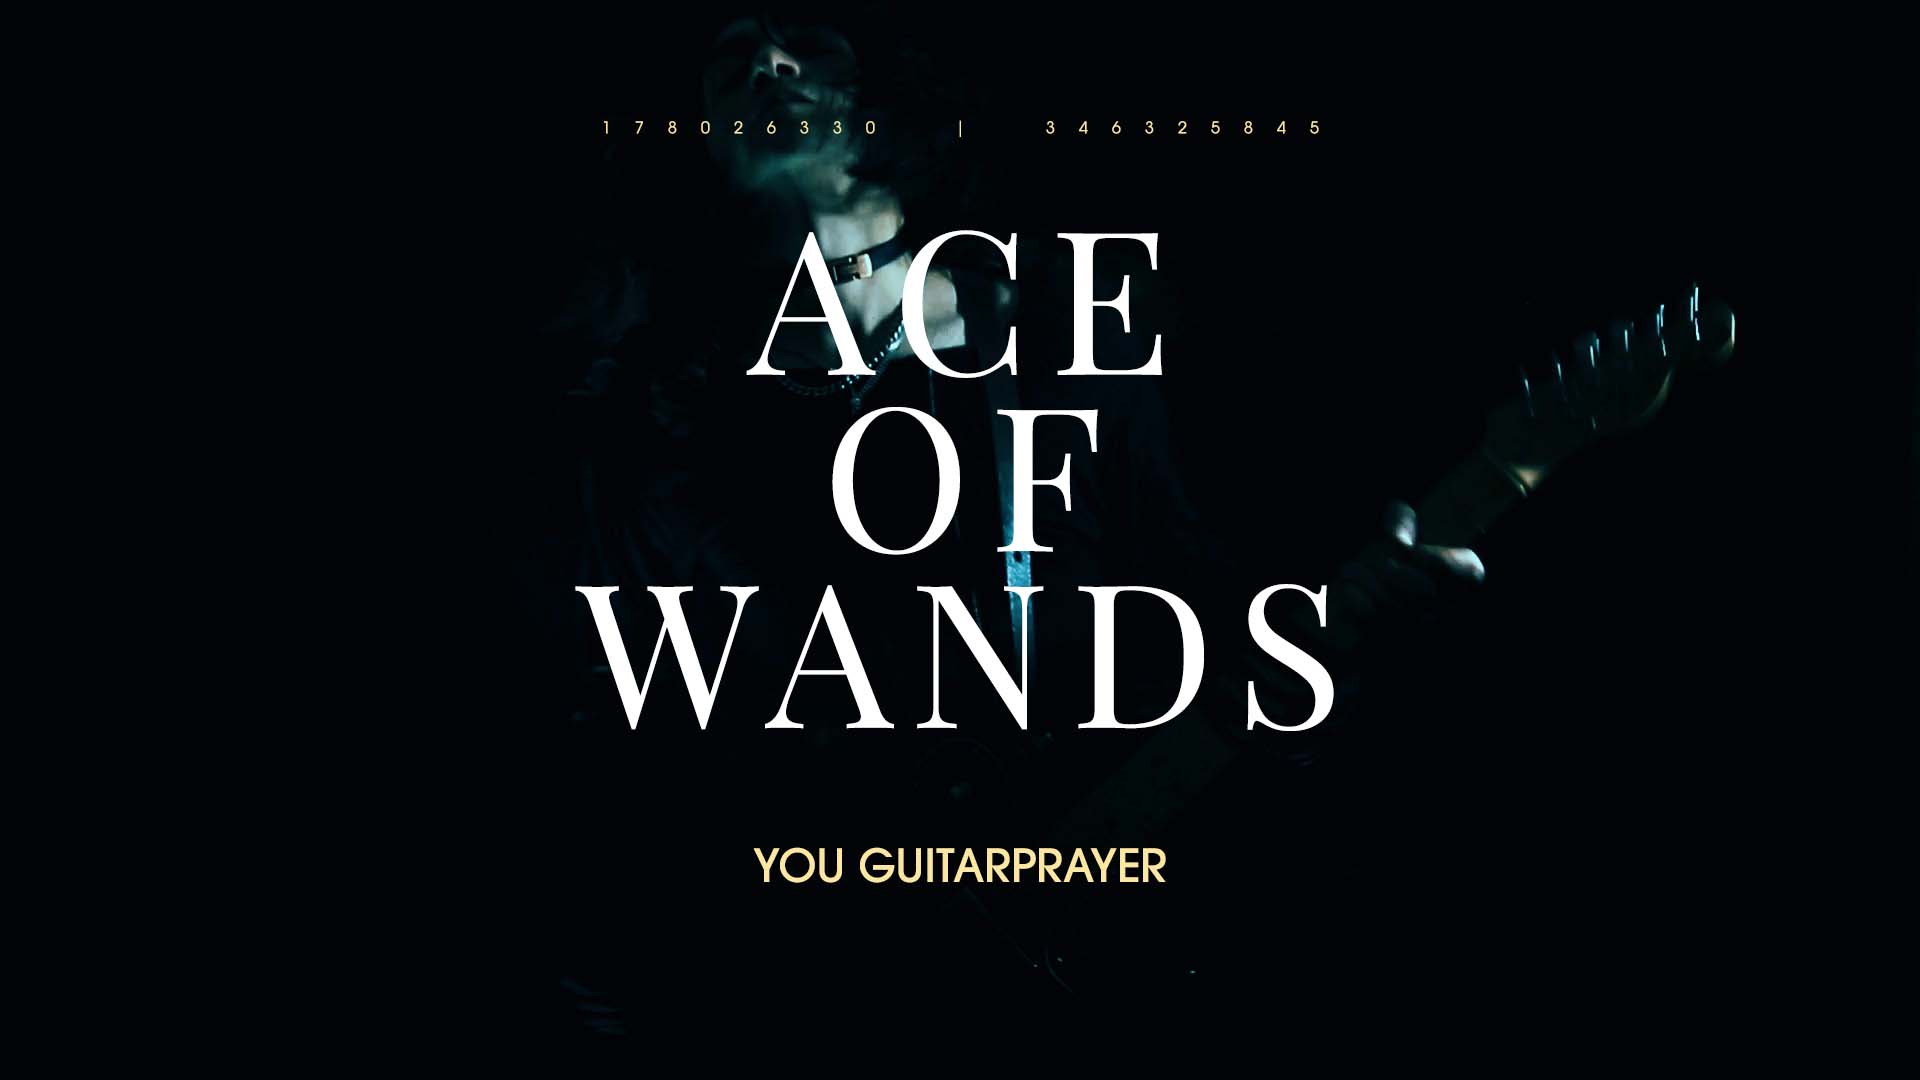 YOU GUITARPRAYER "Ace Of Wands"